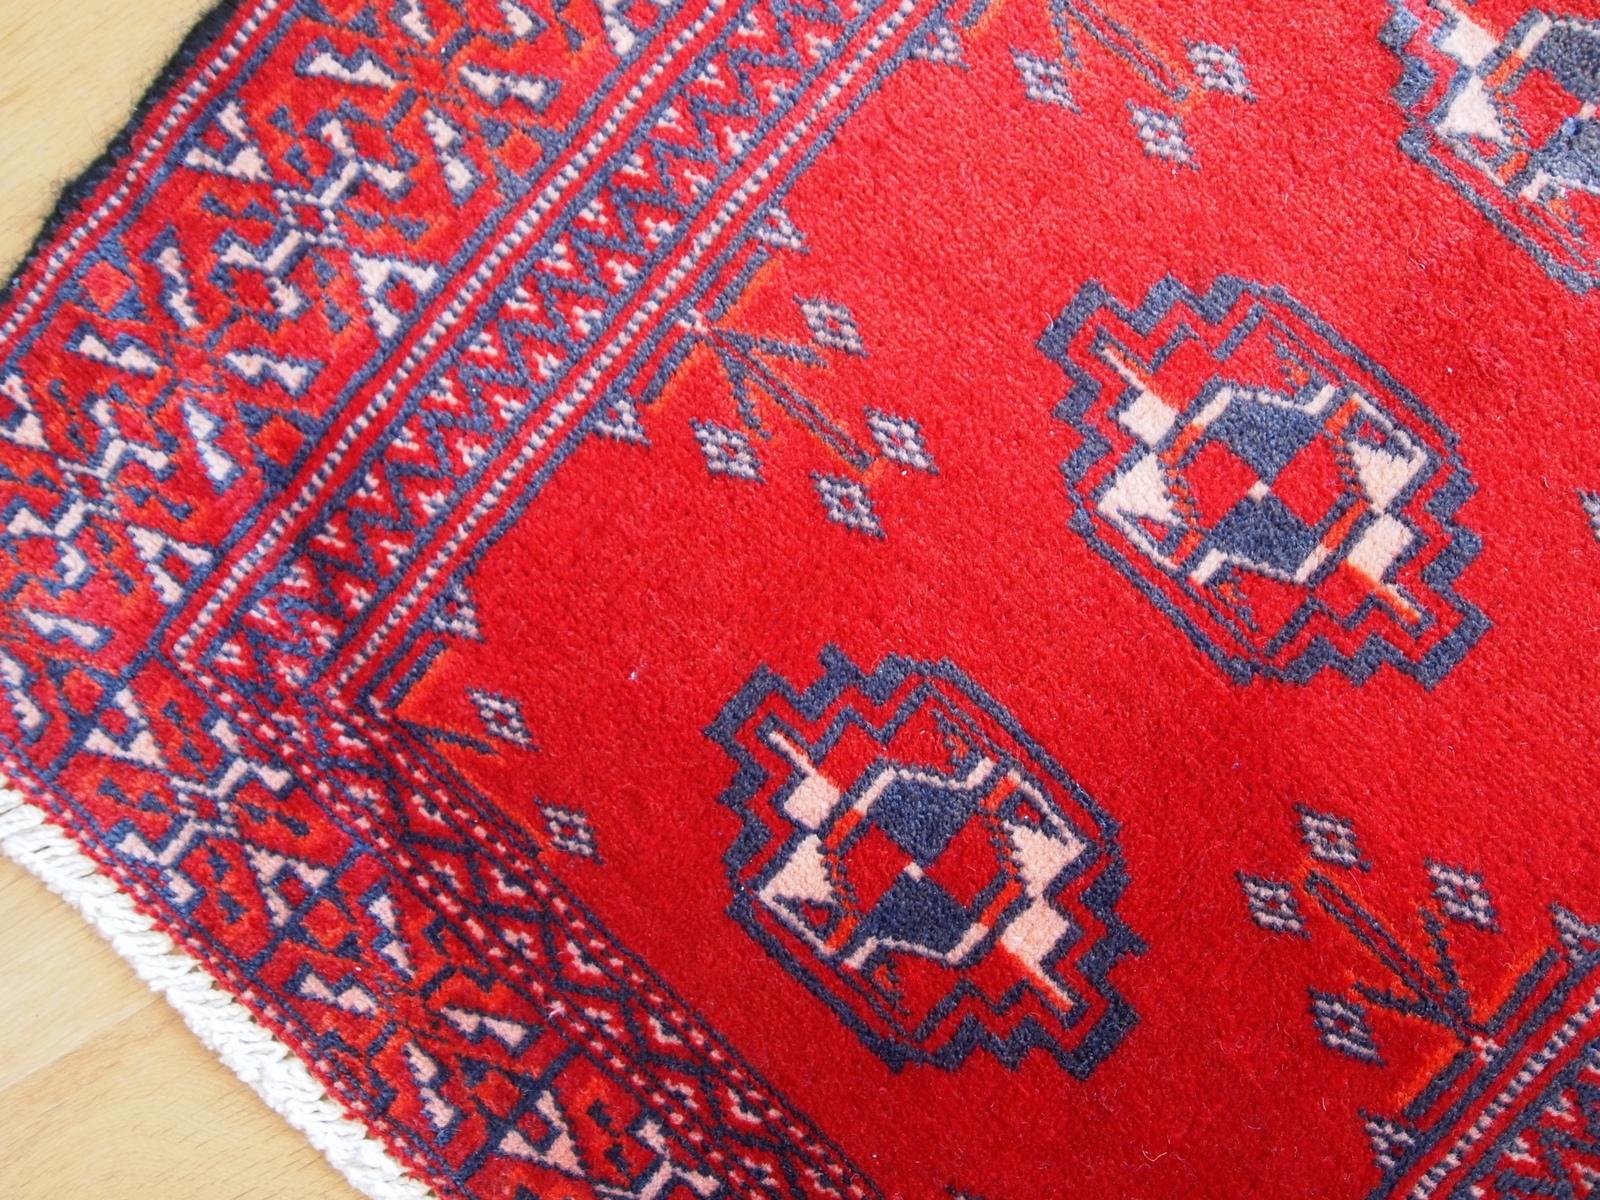 Handgefertigter Turkoman-Teppich in leuchtend rotem Feld und violettem Muster. Sehr klassisches Tribal-Design und erfrischend schöne Farben. Der Wollflor ist kurz geschnitten, aber in gutem Originalzustand.


-Zustand: original gut,

-Etwa: